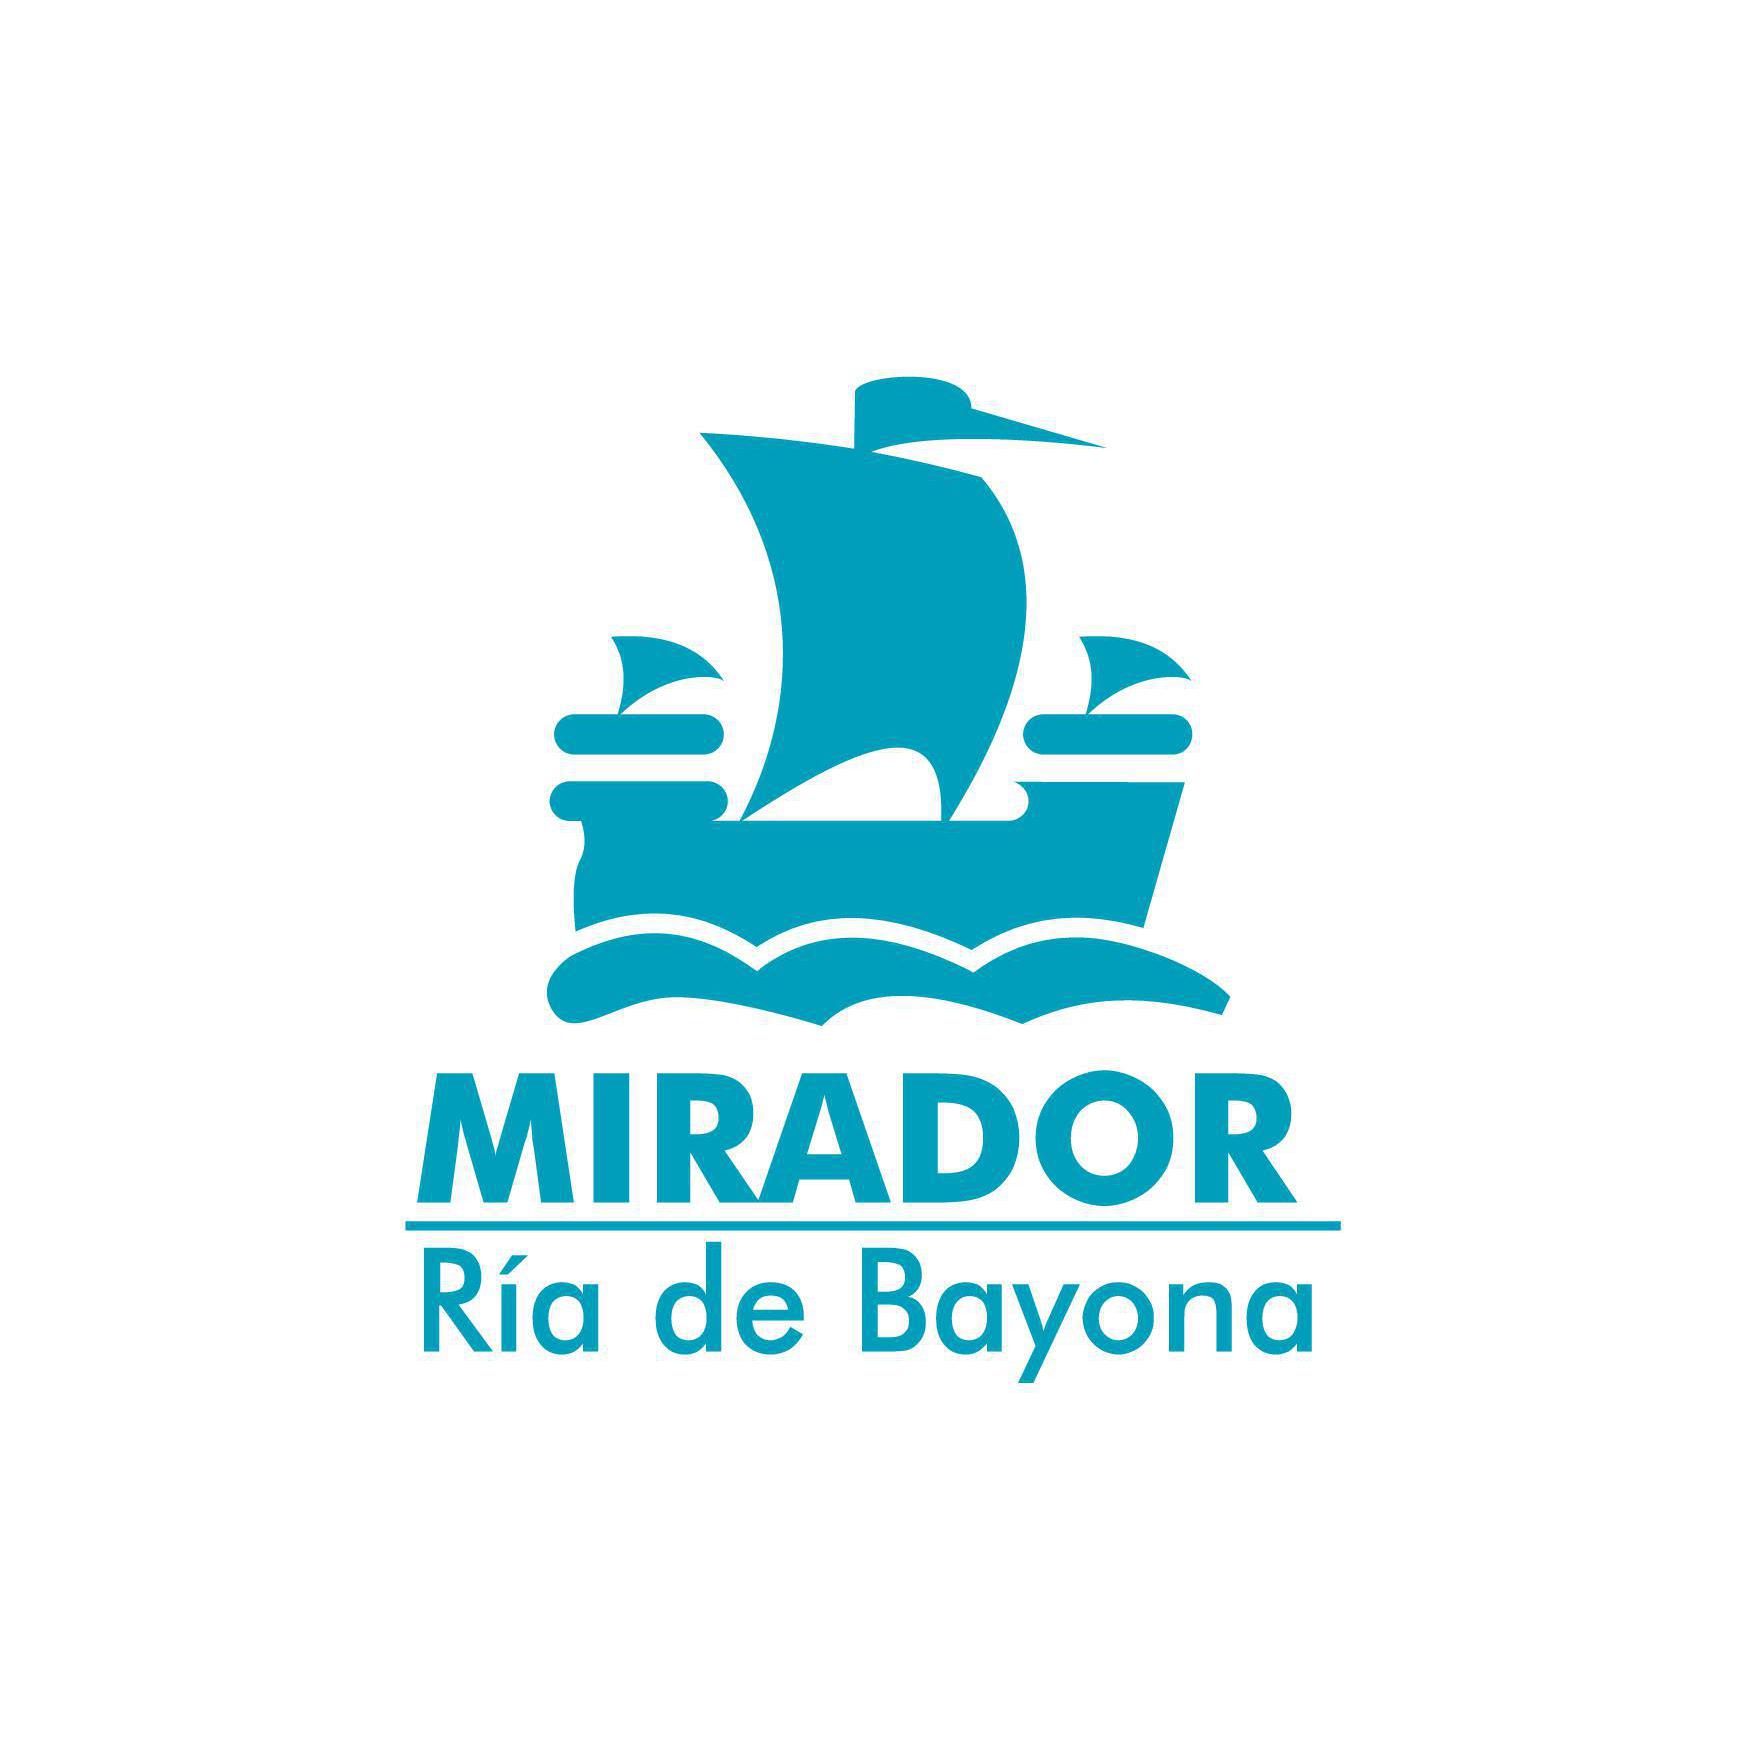 Mirador Ria De Bayona Logo